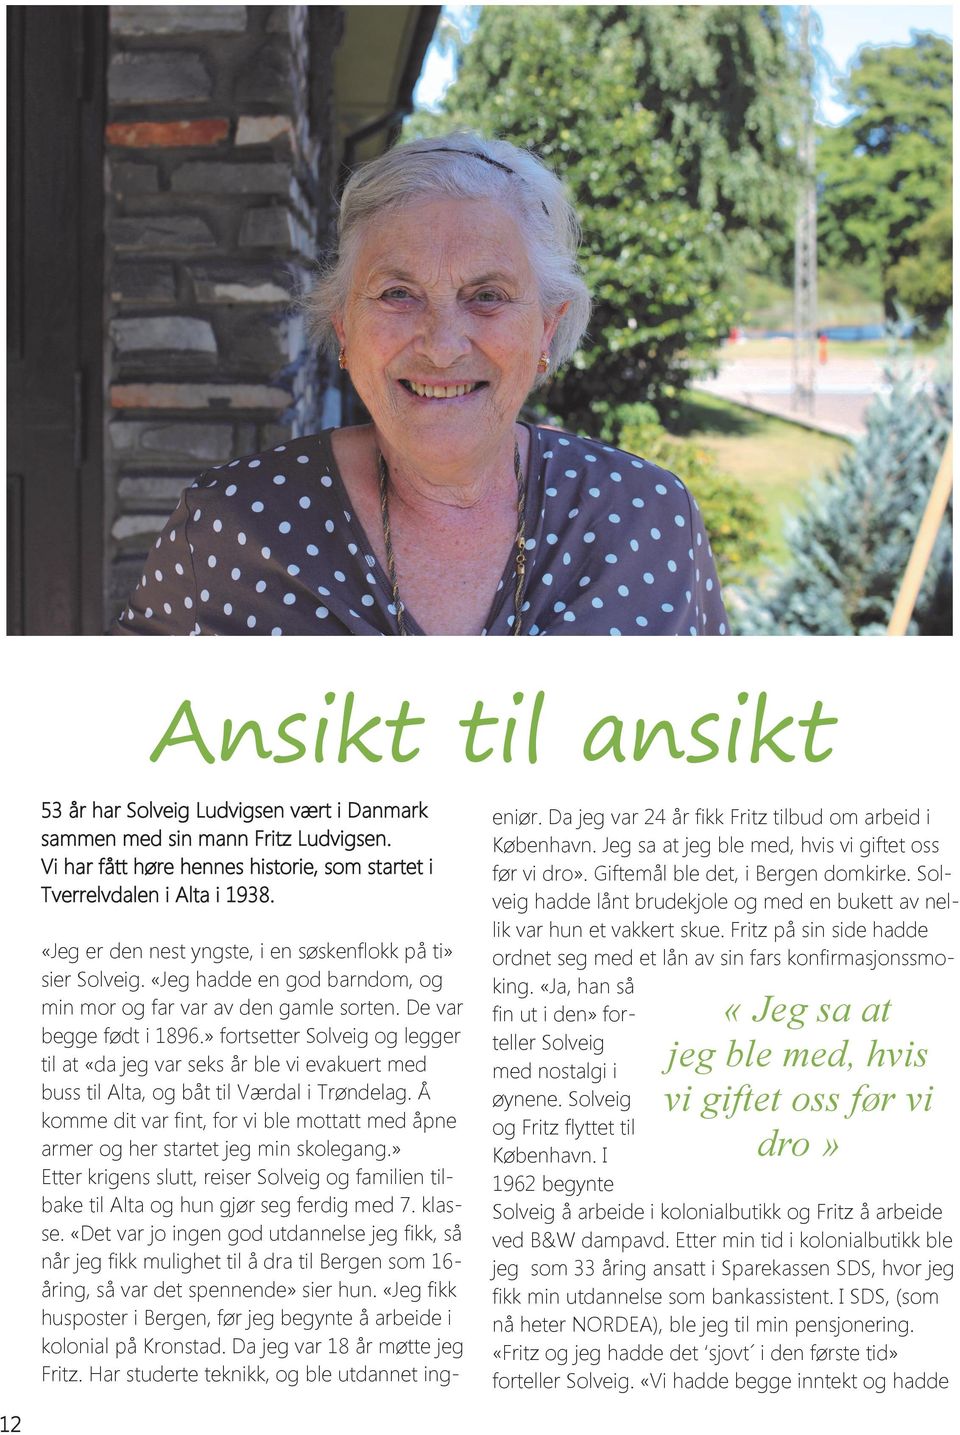 » fortsetter Solveig og legger til at «da jeg var seks år ble vi evakuert med buss til Alta, og båt til Værdal i Trøndelag.